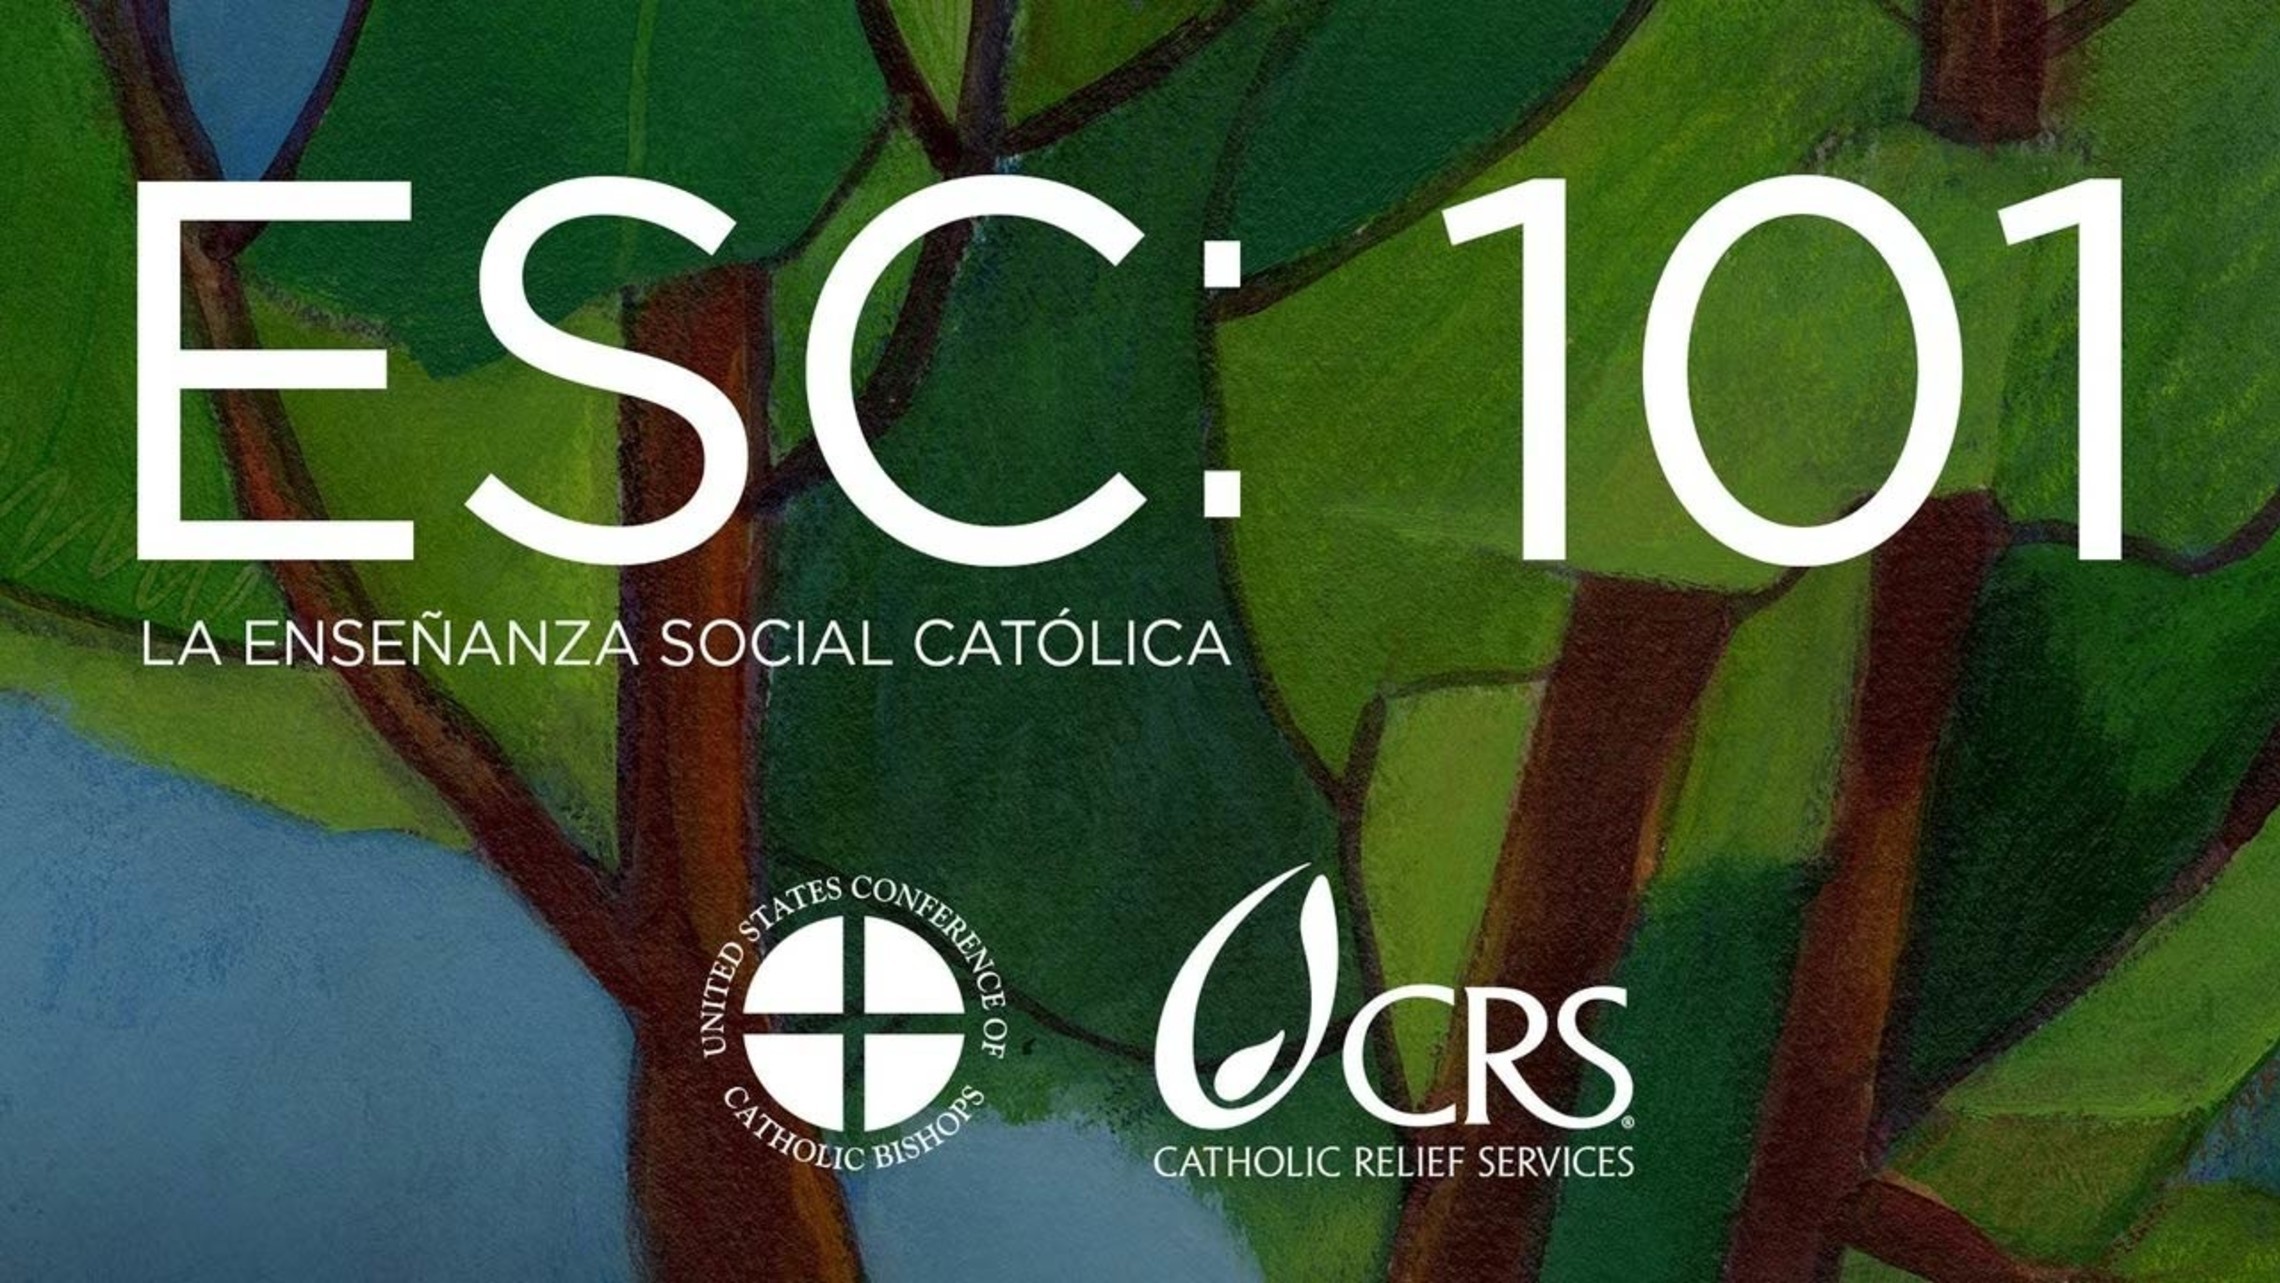 Formed La Ensenanza Social Catolica